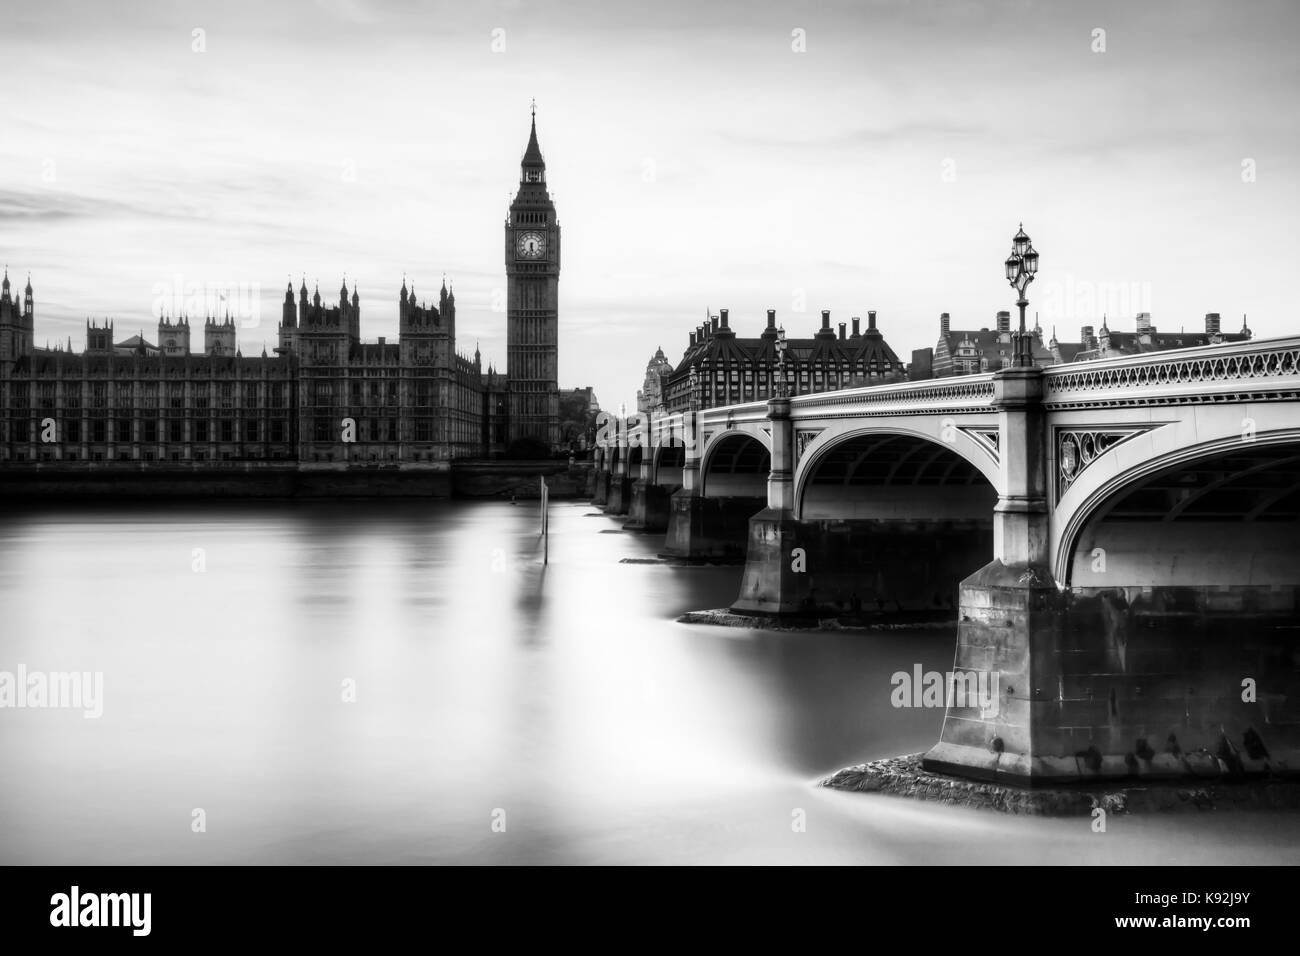 Les chambres du parlement (palais de Westminster) et le pont de Westminster, London, UK Banque D'Images